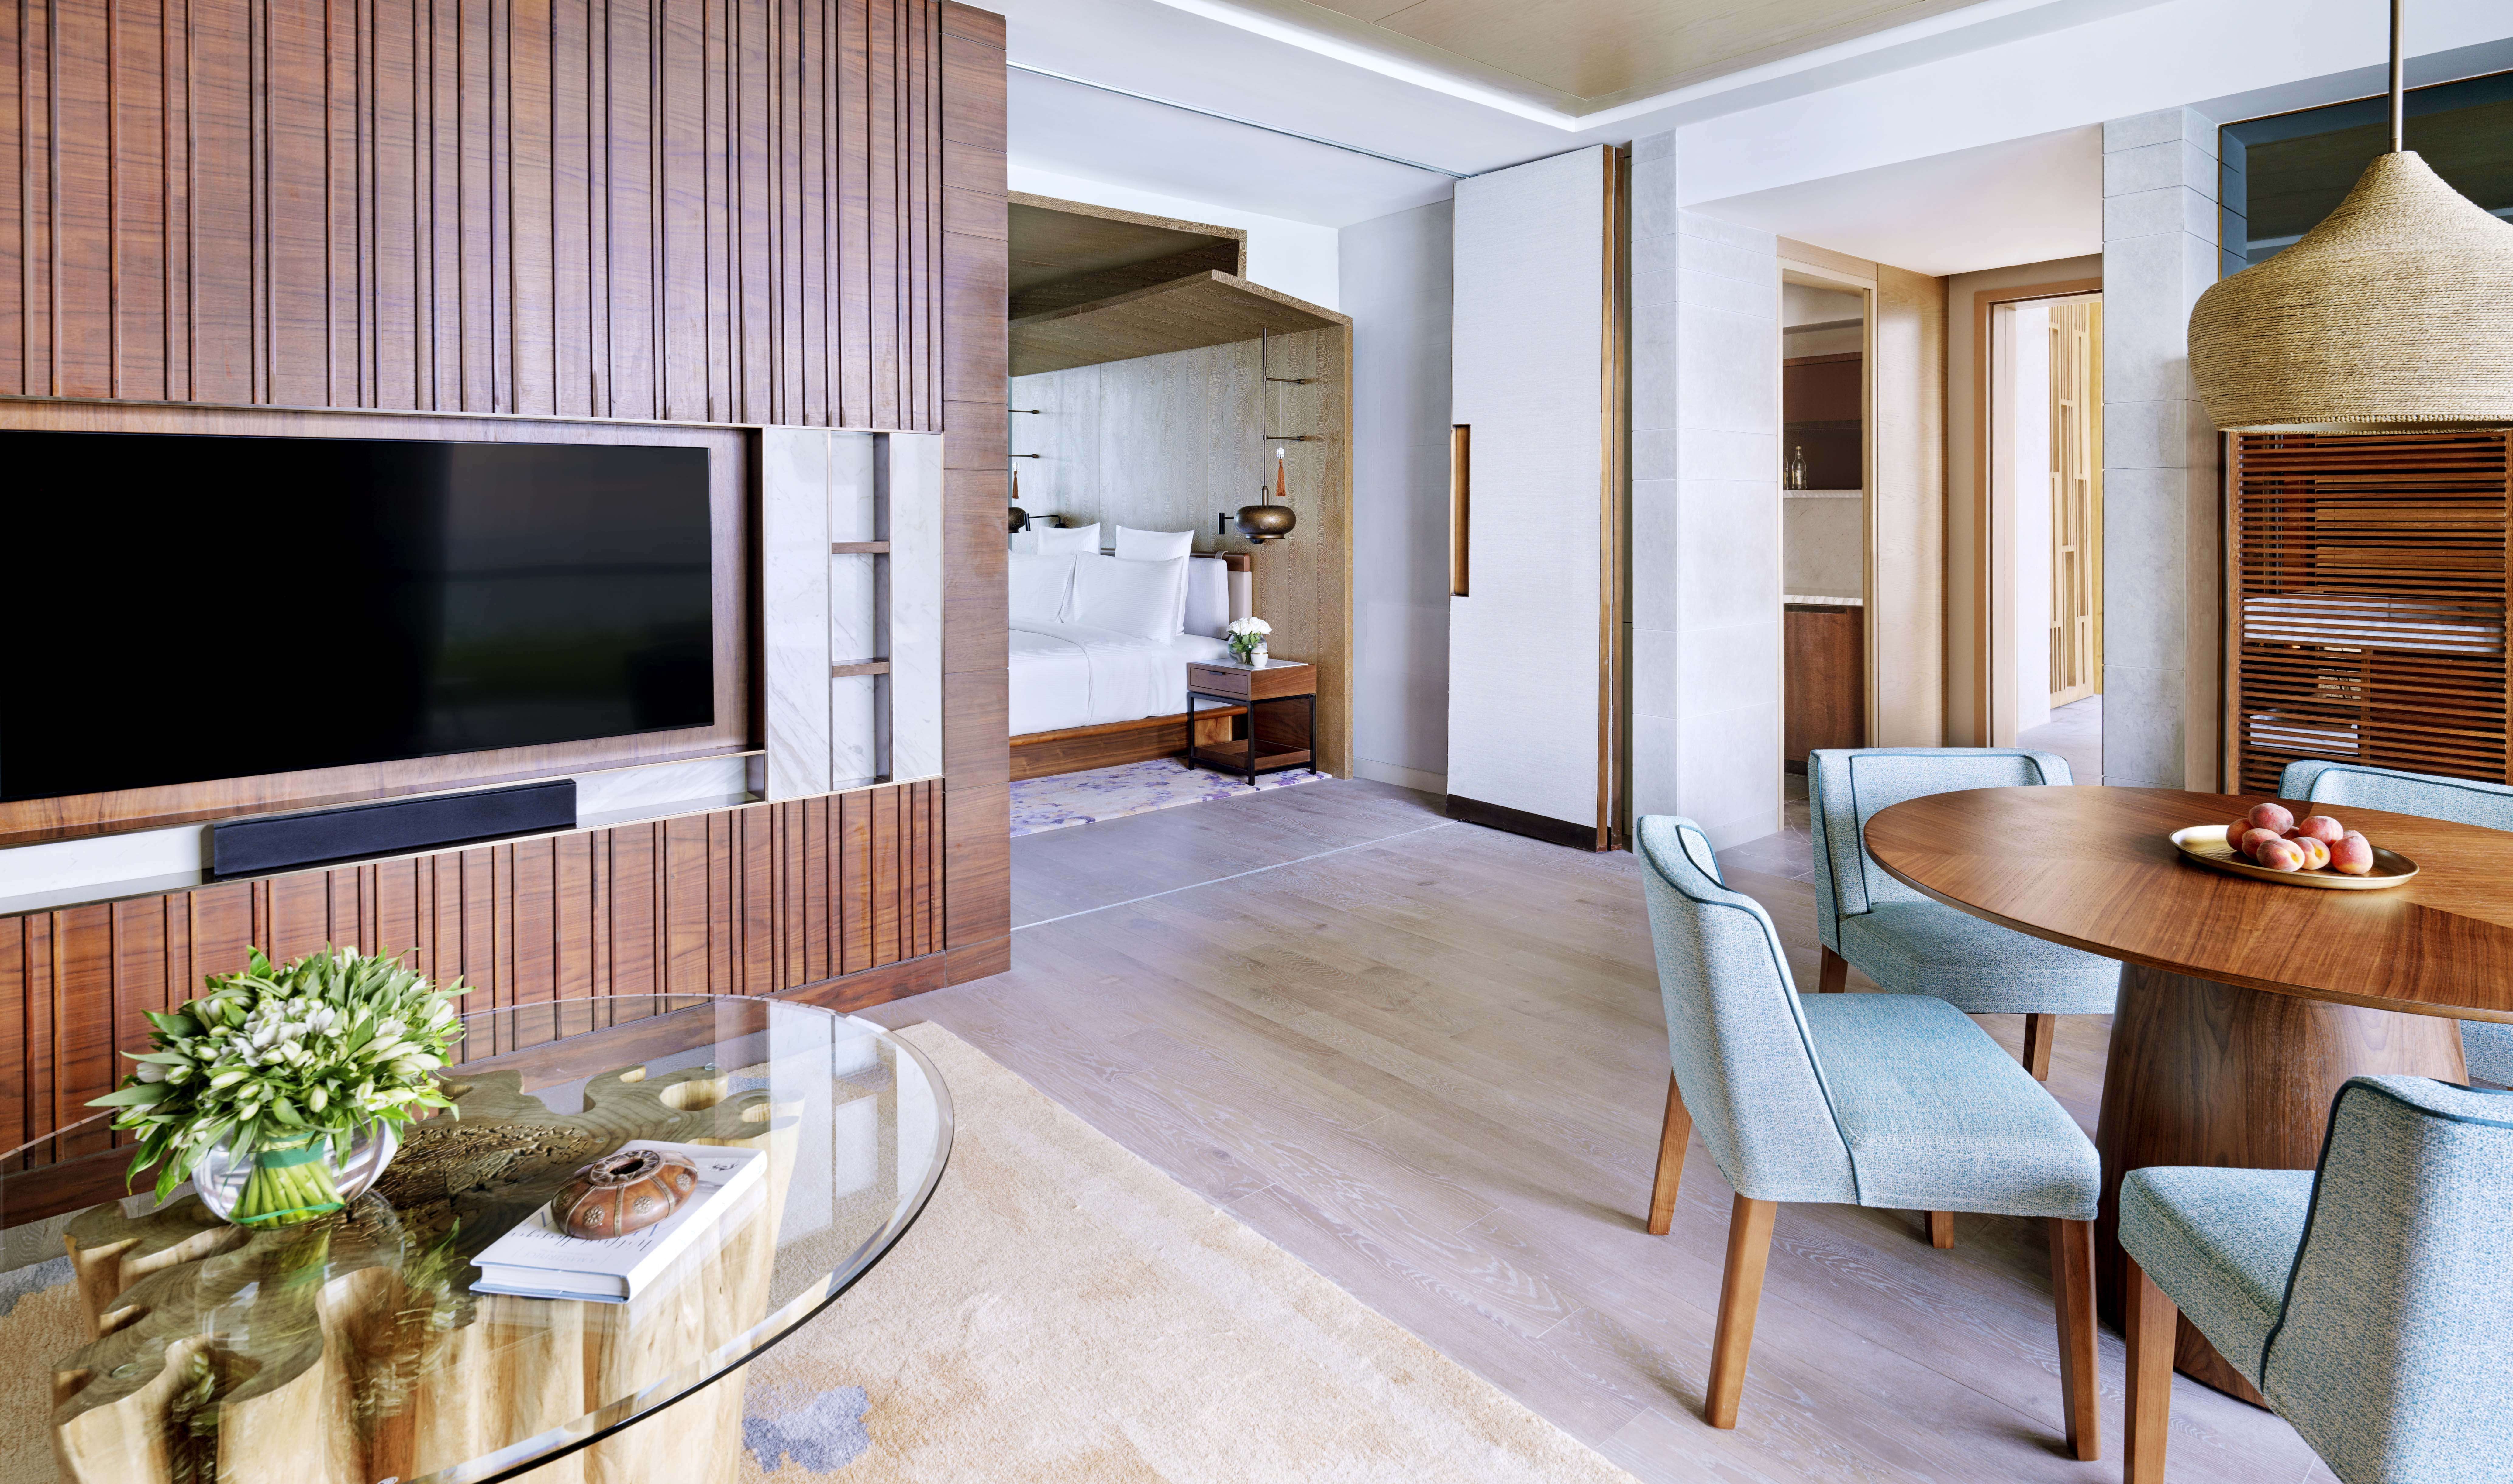 1 Bedroom Family Villa, Intercontinental Ras Al Khaimah Mina Al Arab Resort 5*